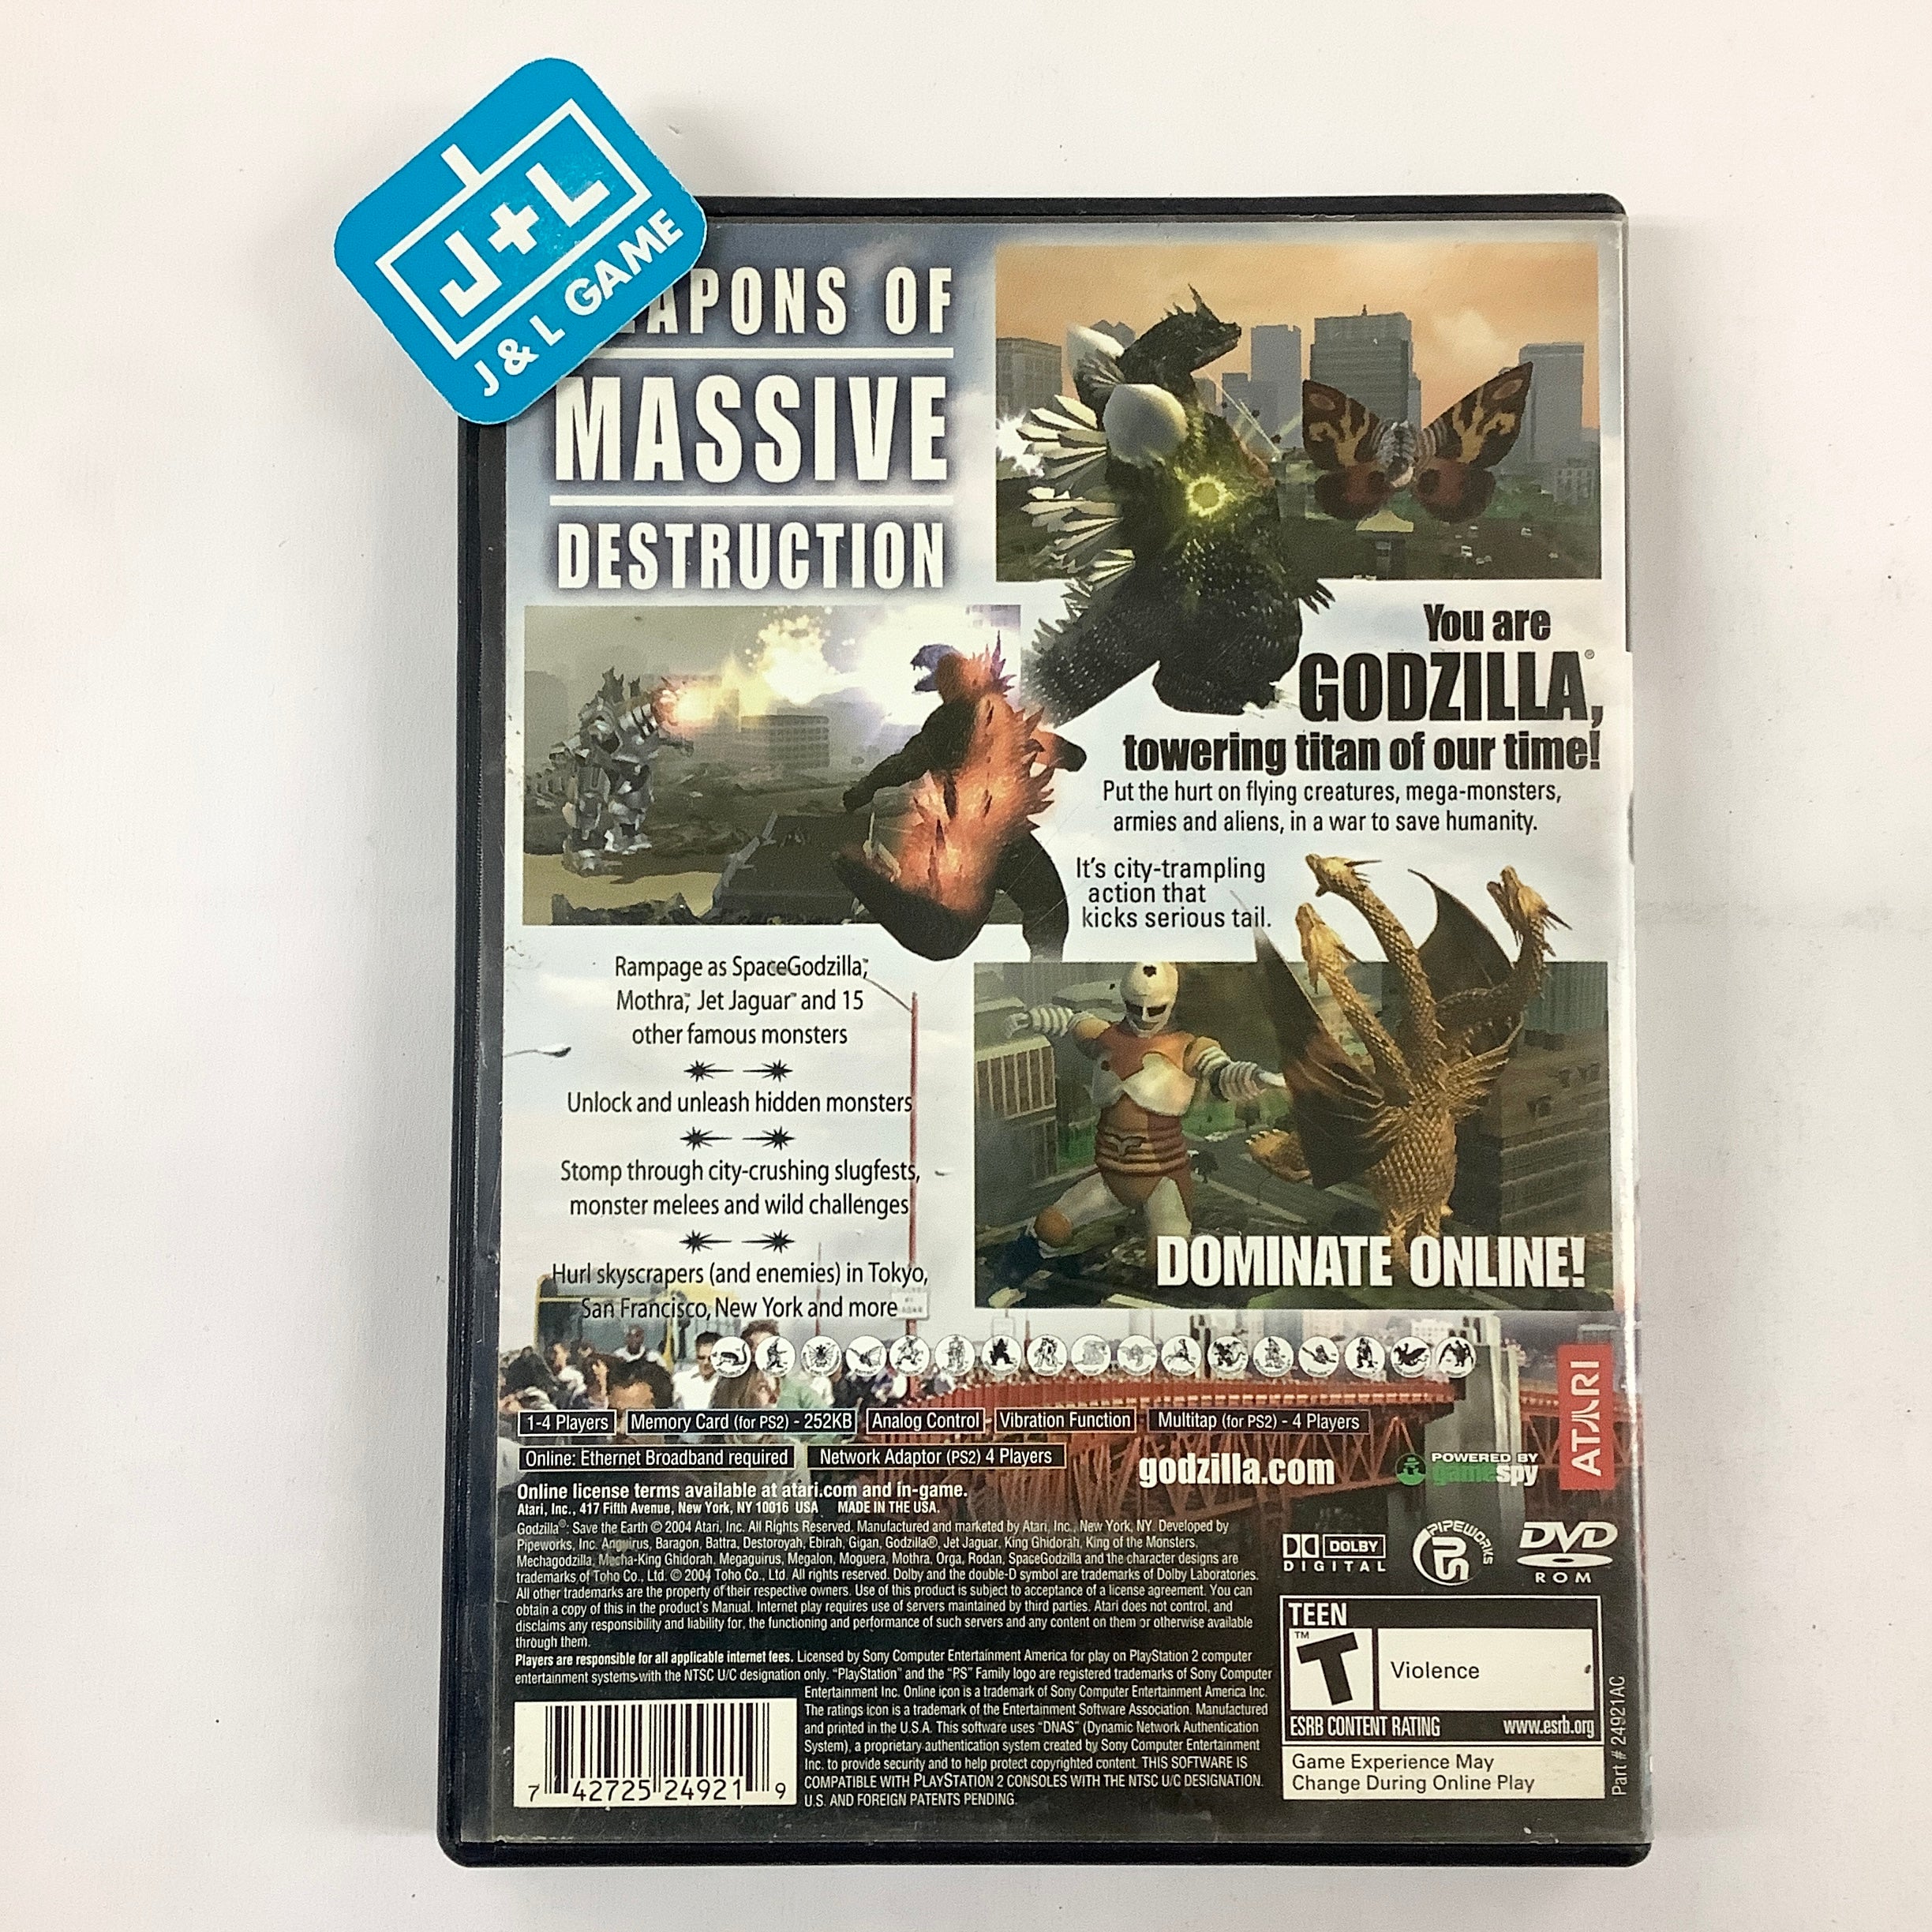 Godzilla: Save the Earth - (PS2) PlayStation 2 [Pre-Owned] Video Games Atari SA   